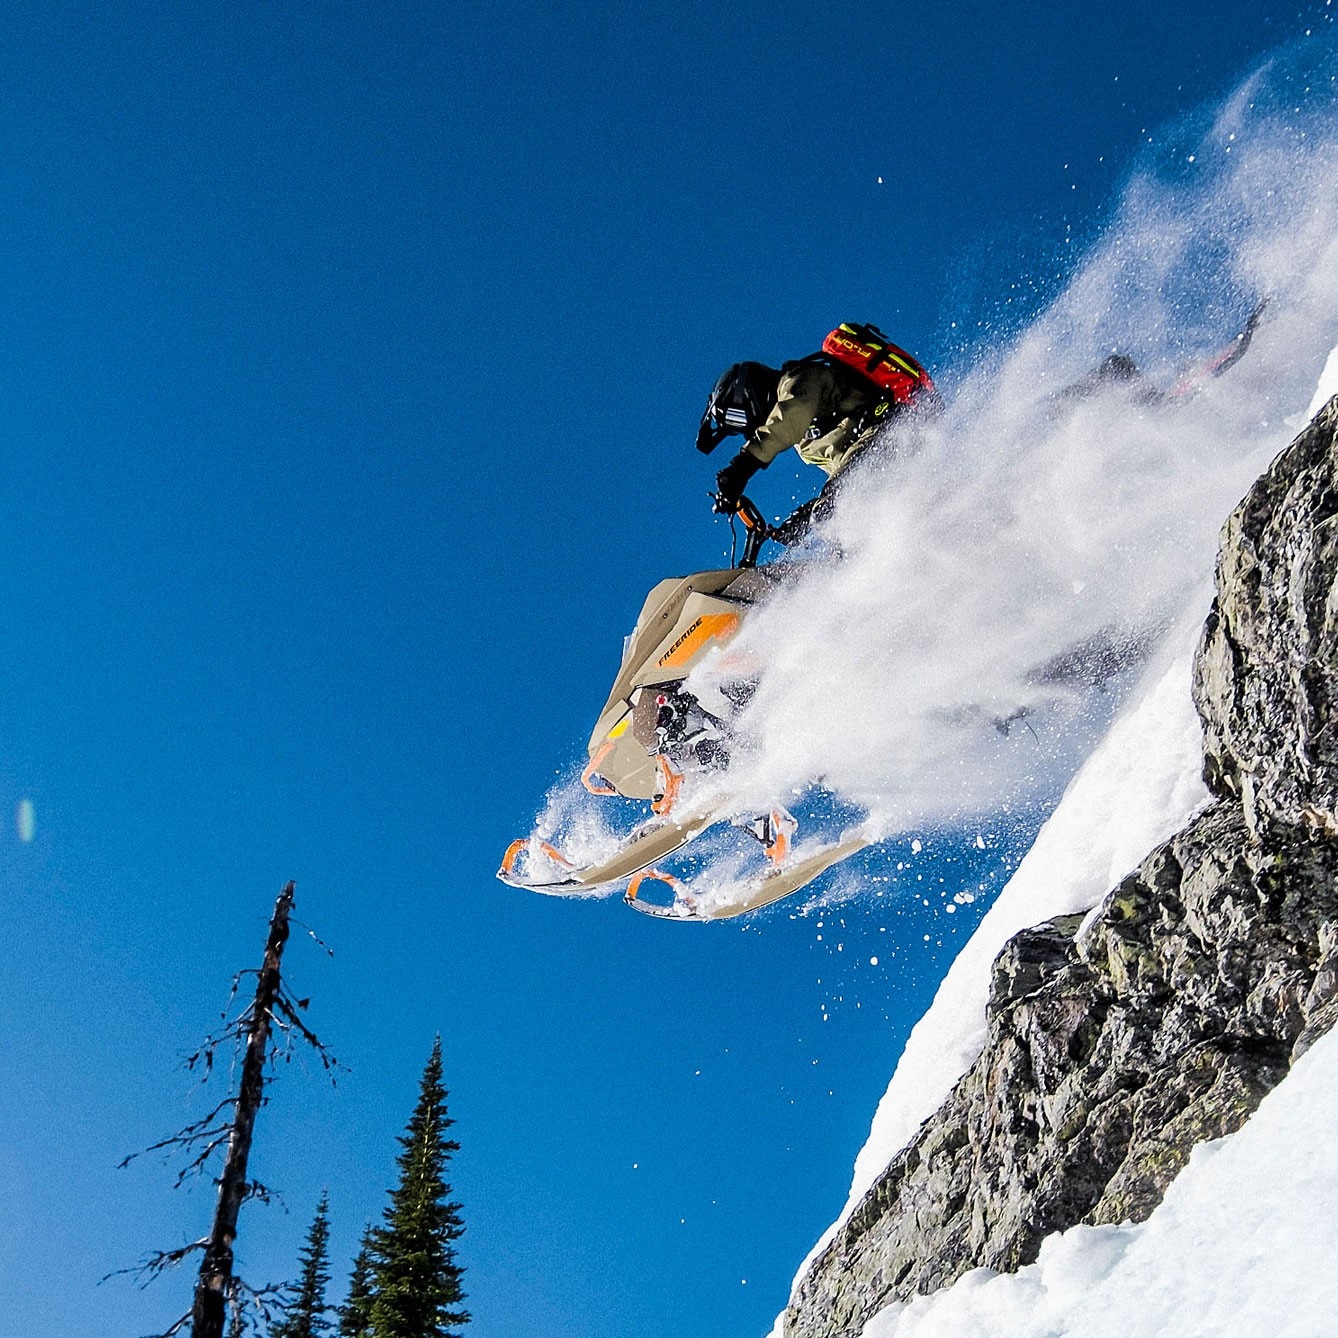 Ski-Doo Freeride 2022 in deep snow